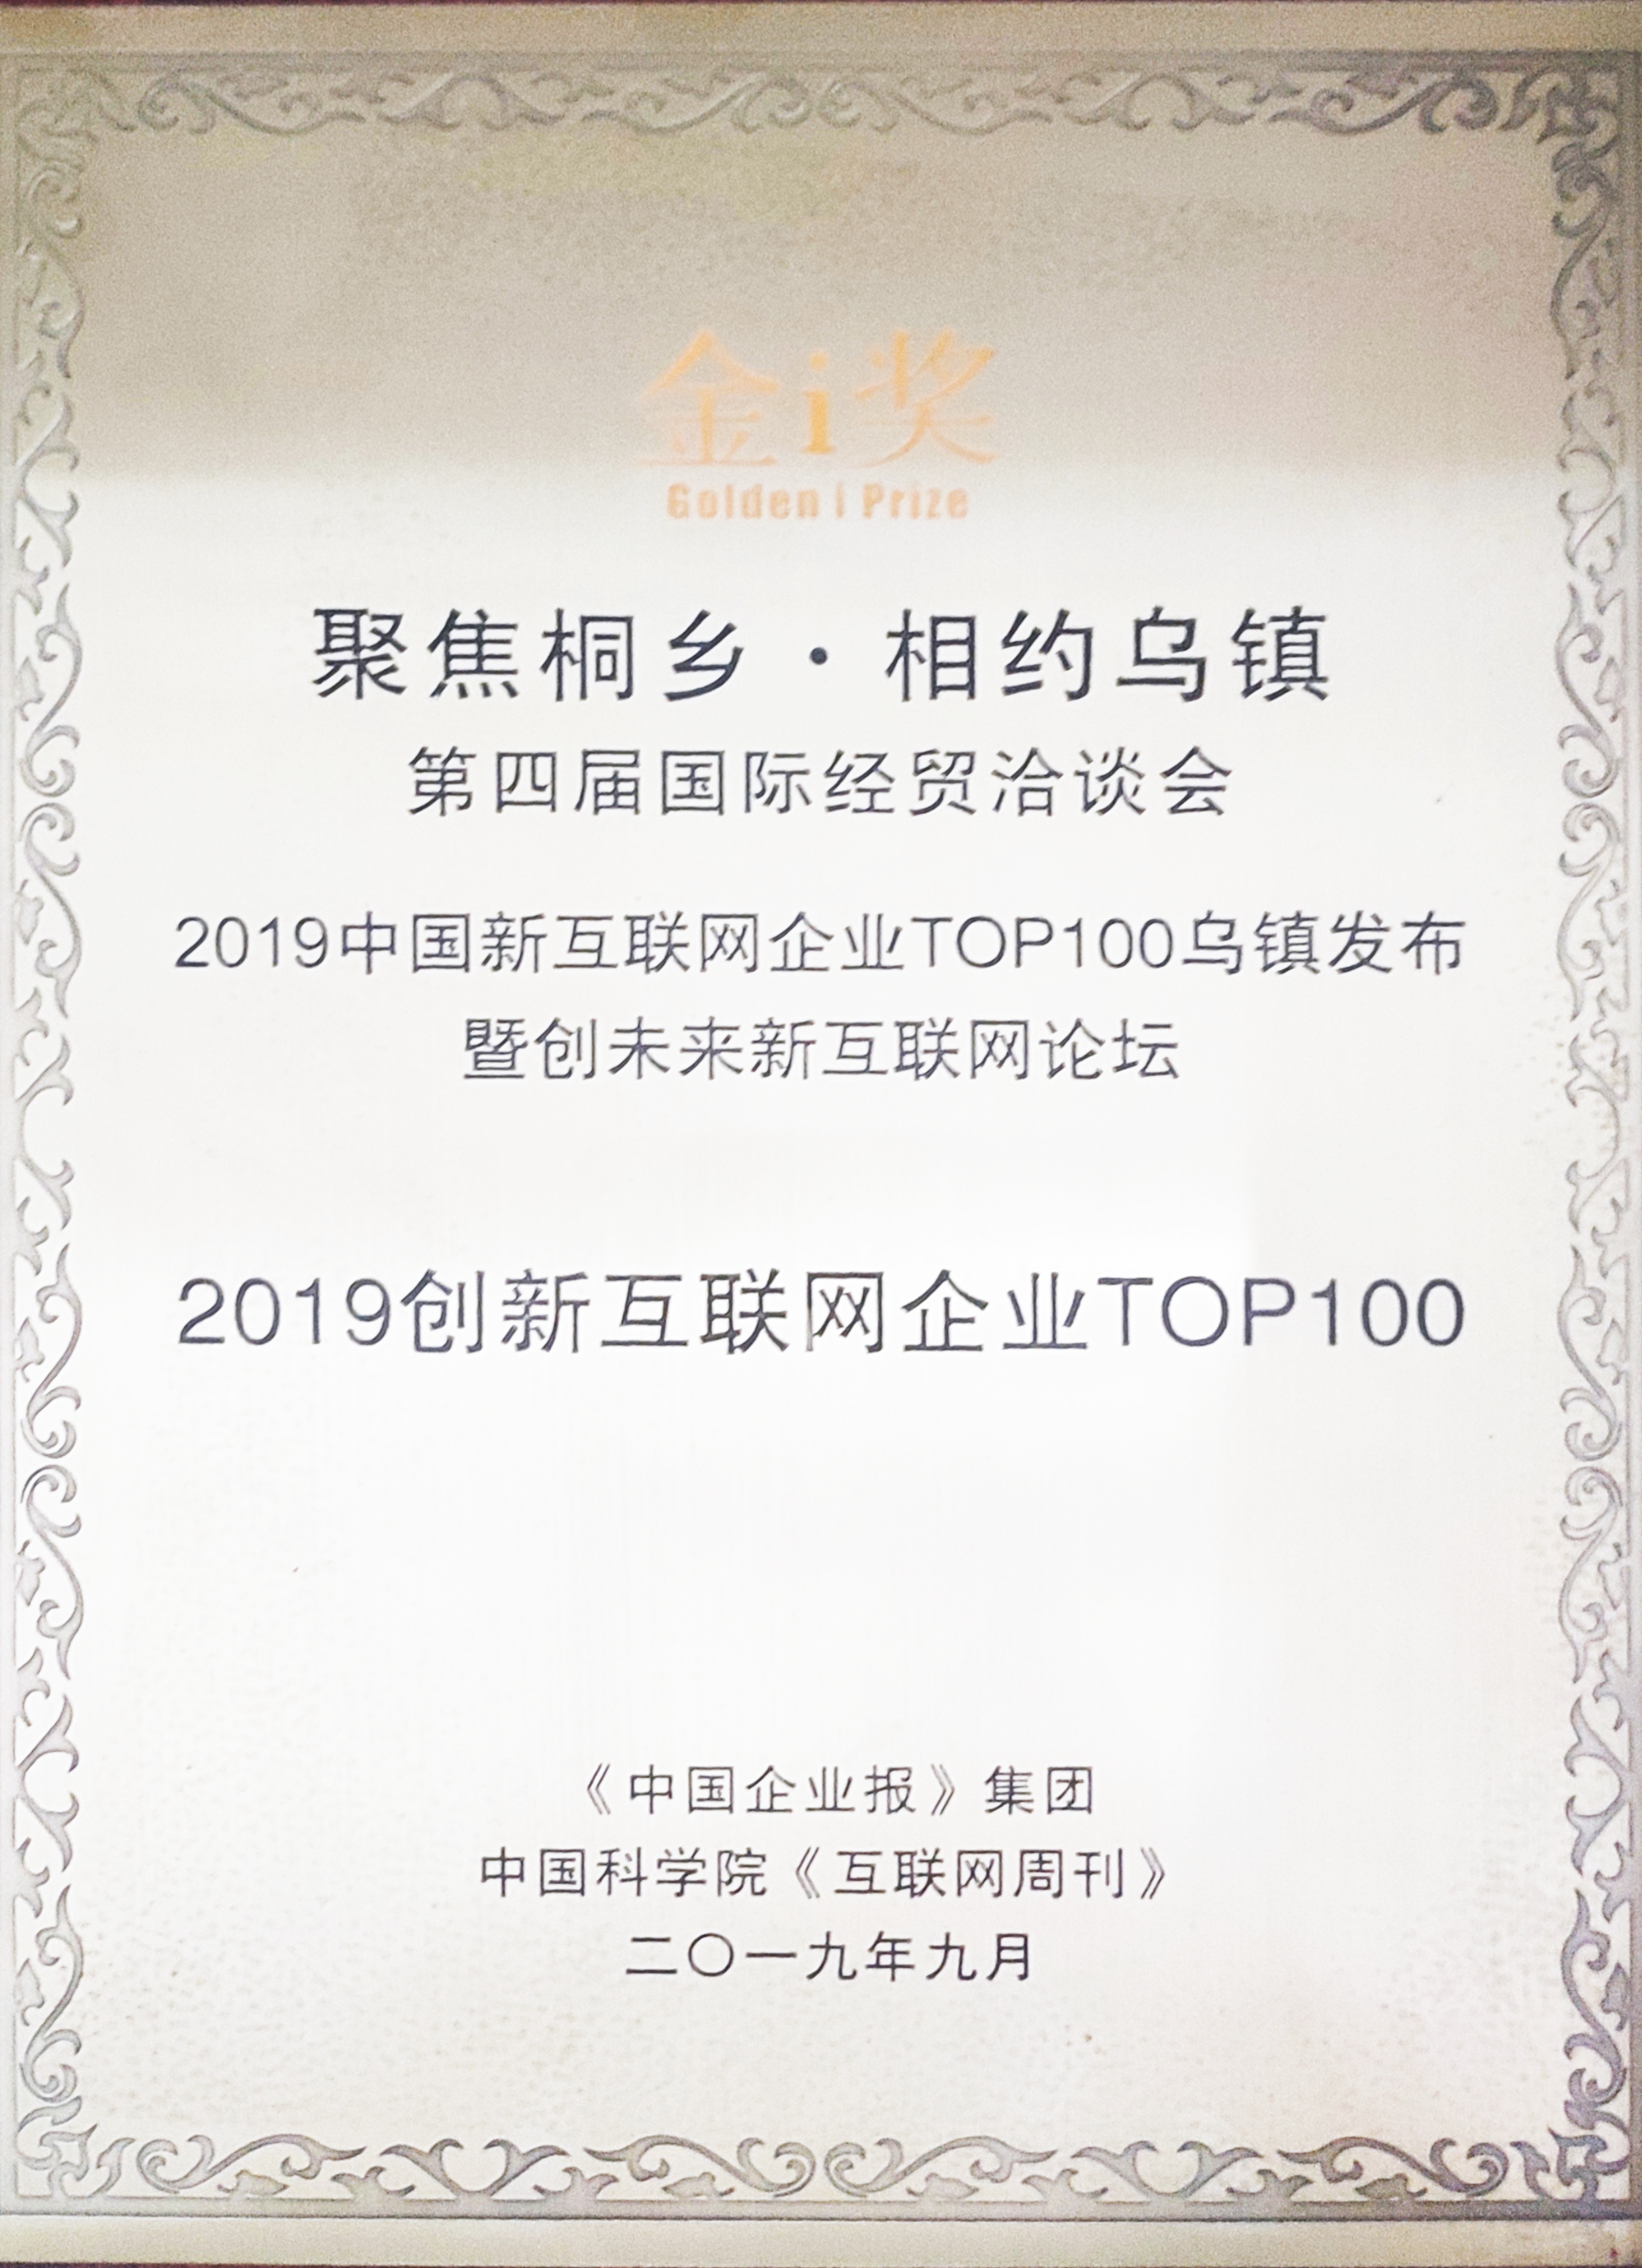 入围“2019 创新互联网企业 TOP100” 榜单